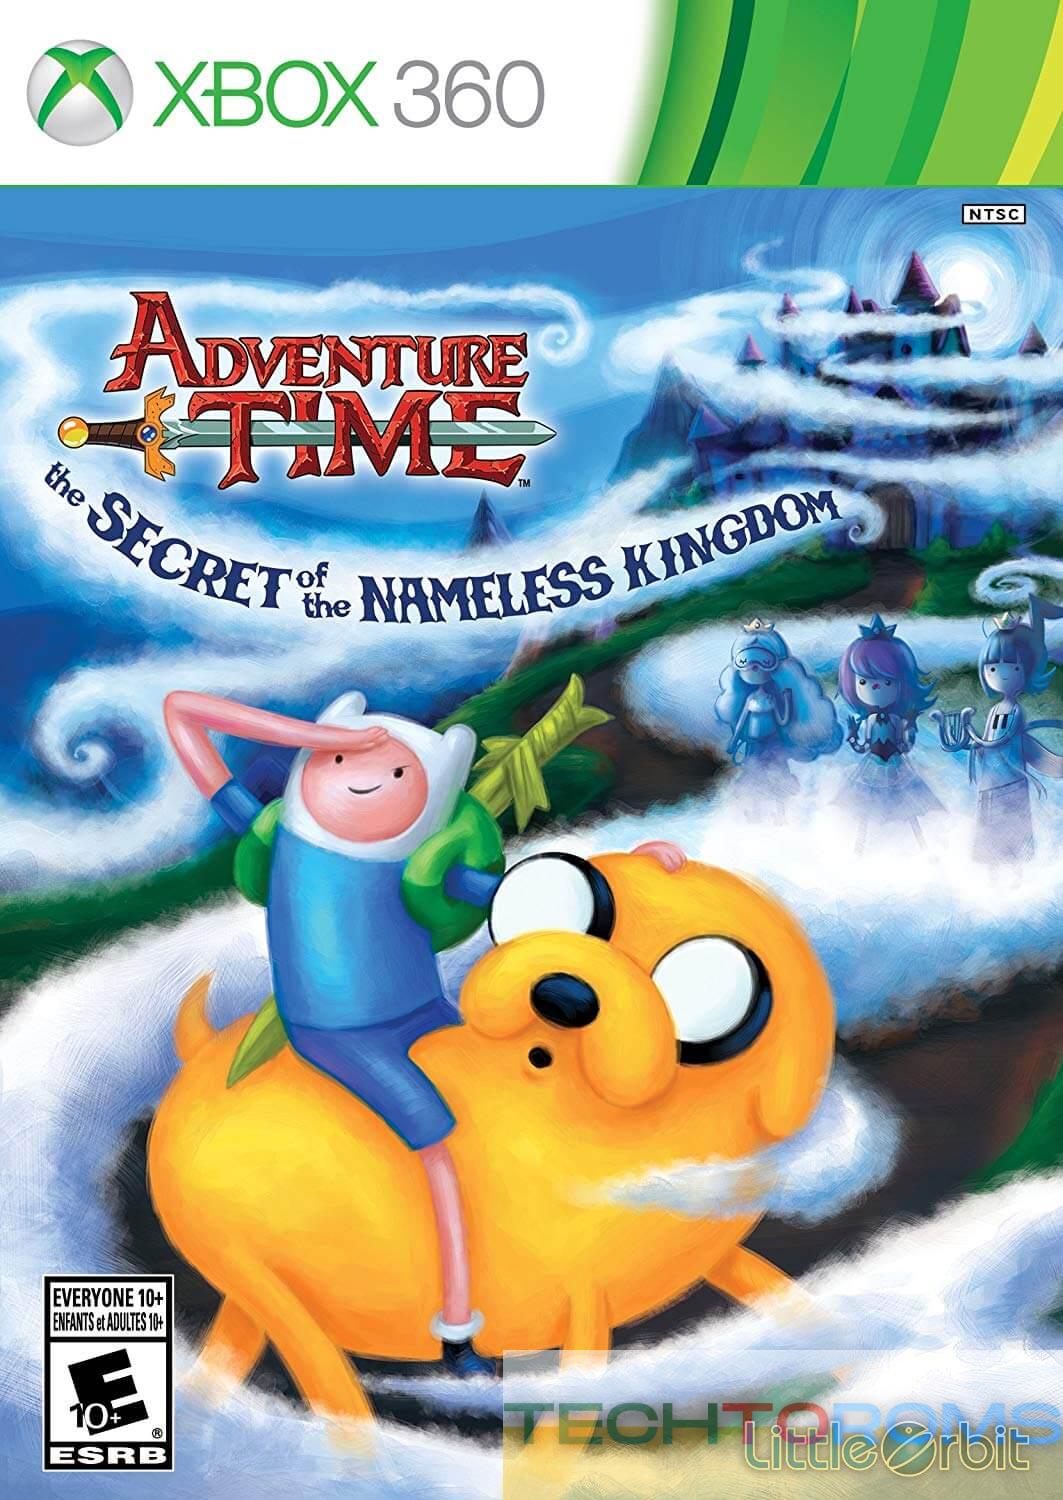 Adventure Time: İsimsiz Krallığın Sırrı